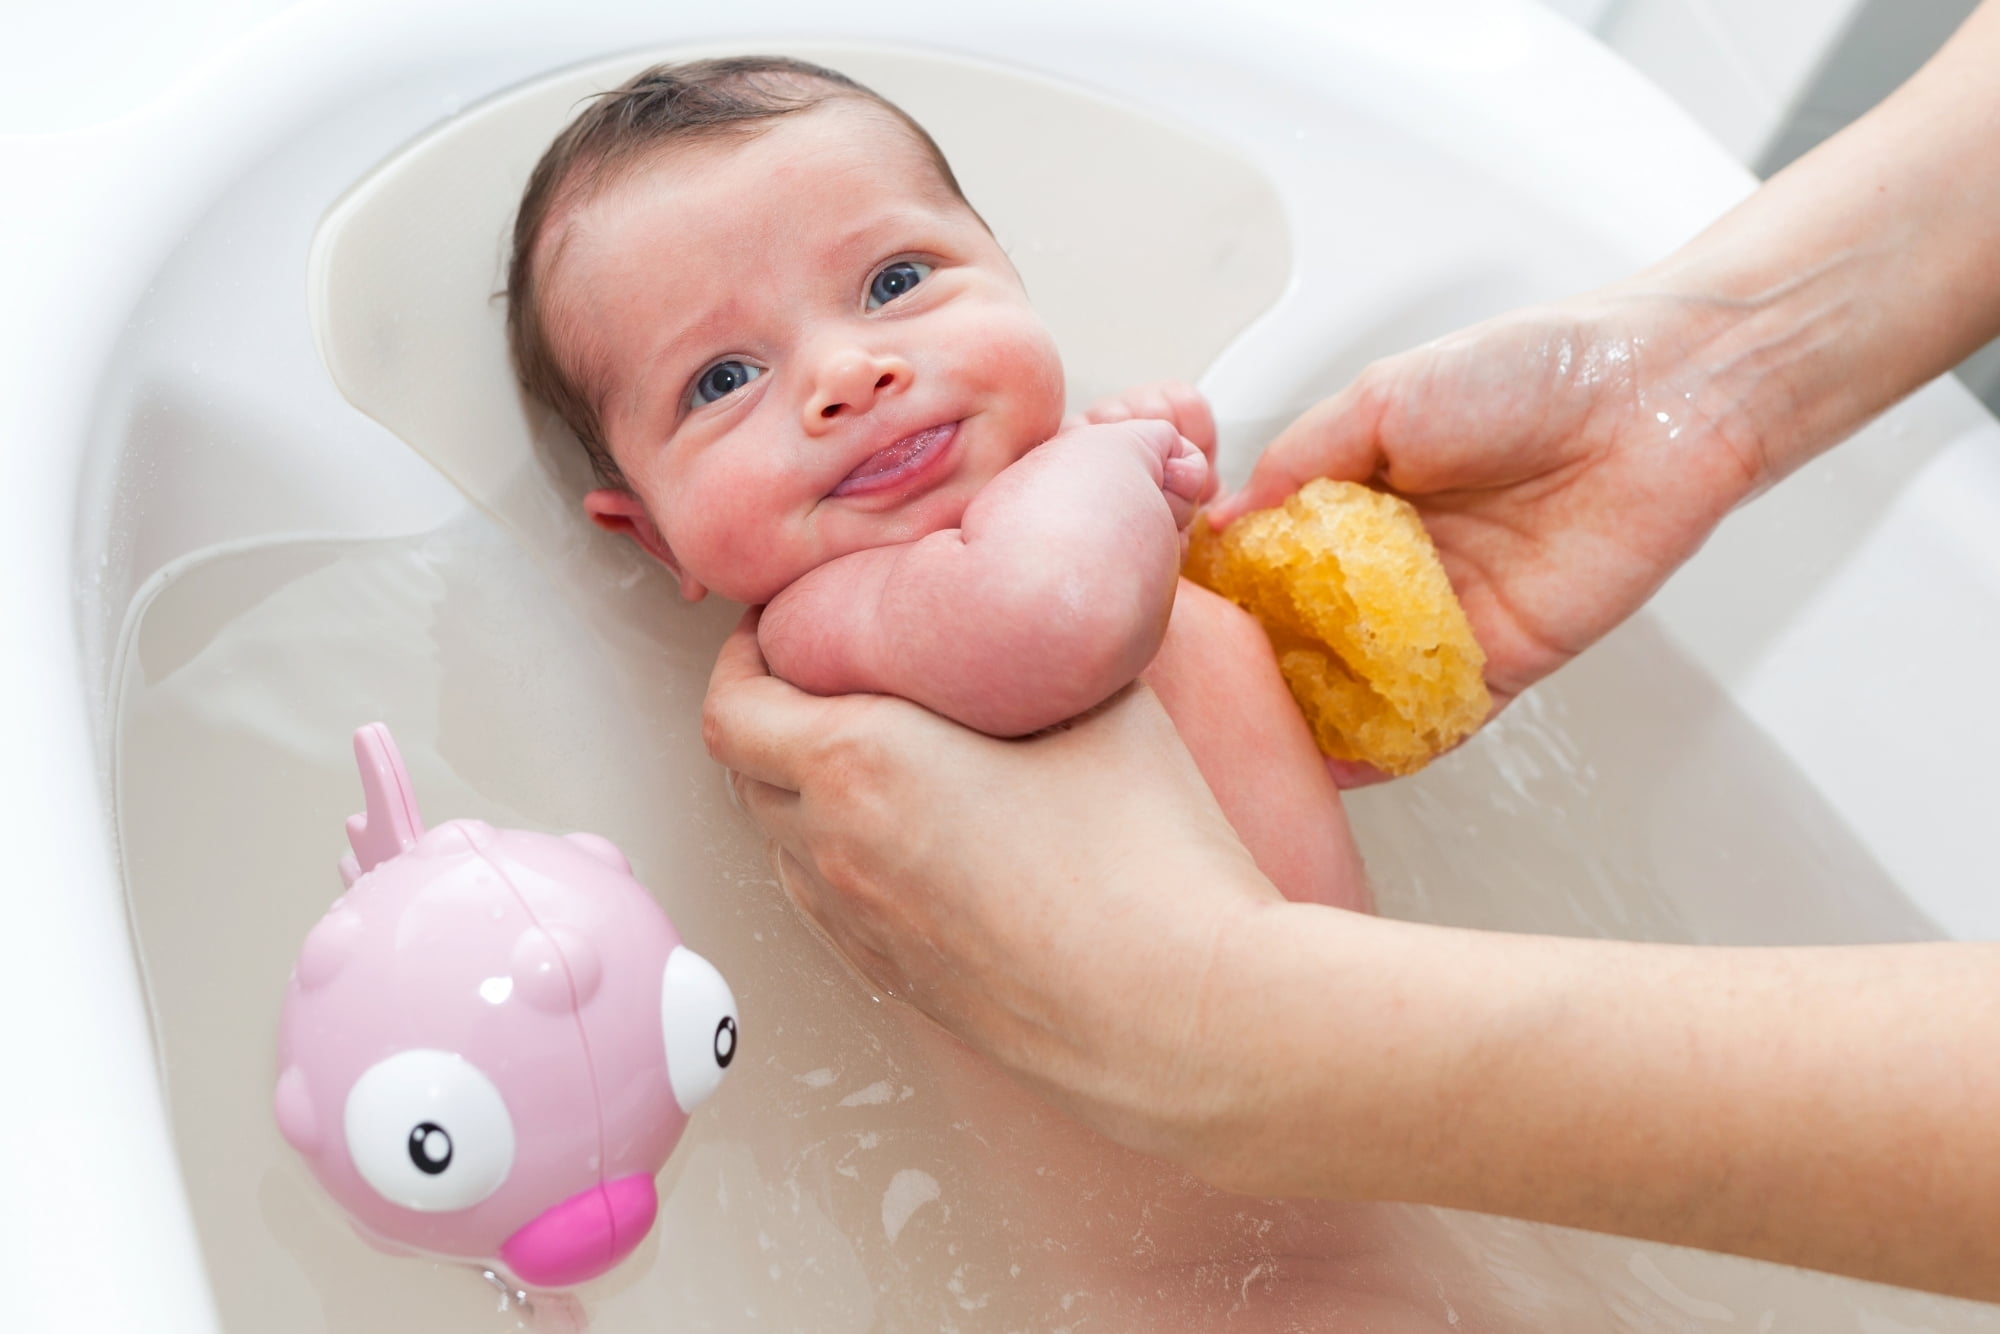 Πλένουμε το σώμα του μωρού με απαλές κινήσεις